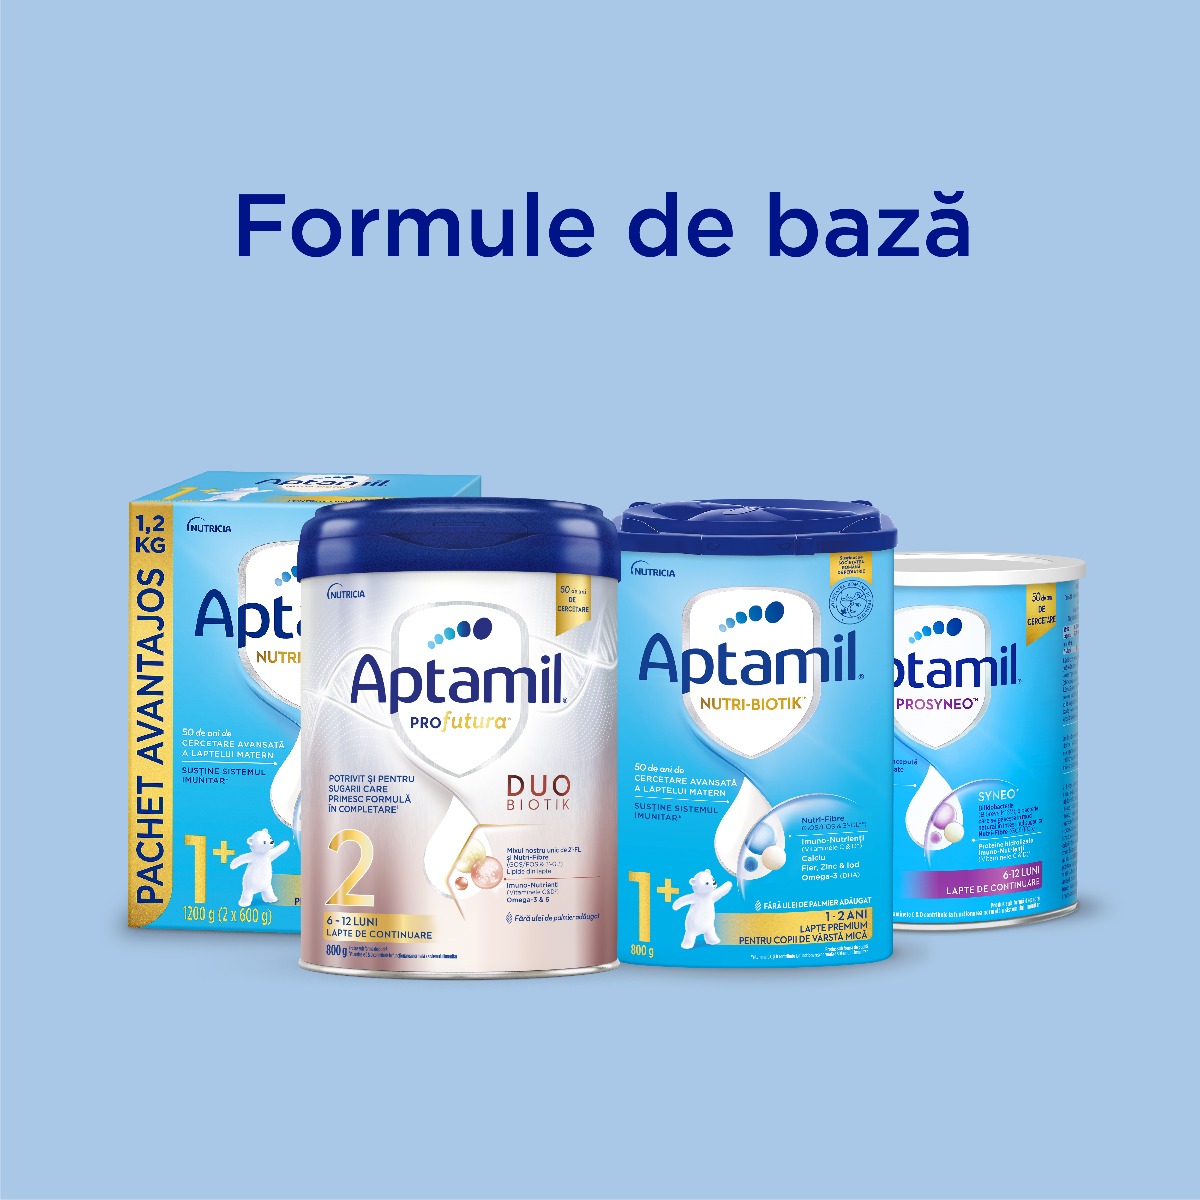 Aptamil - Formule de baza